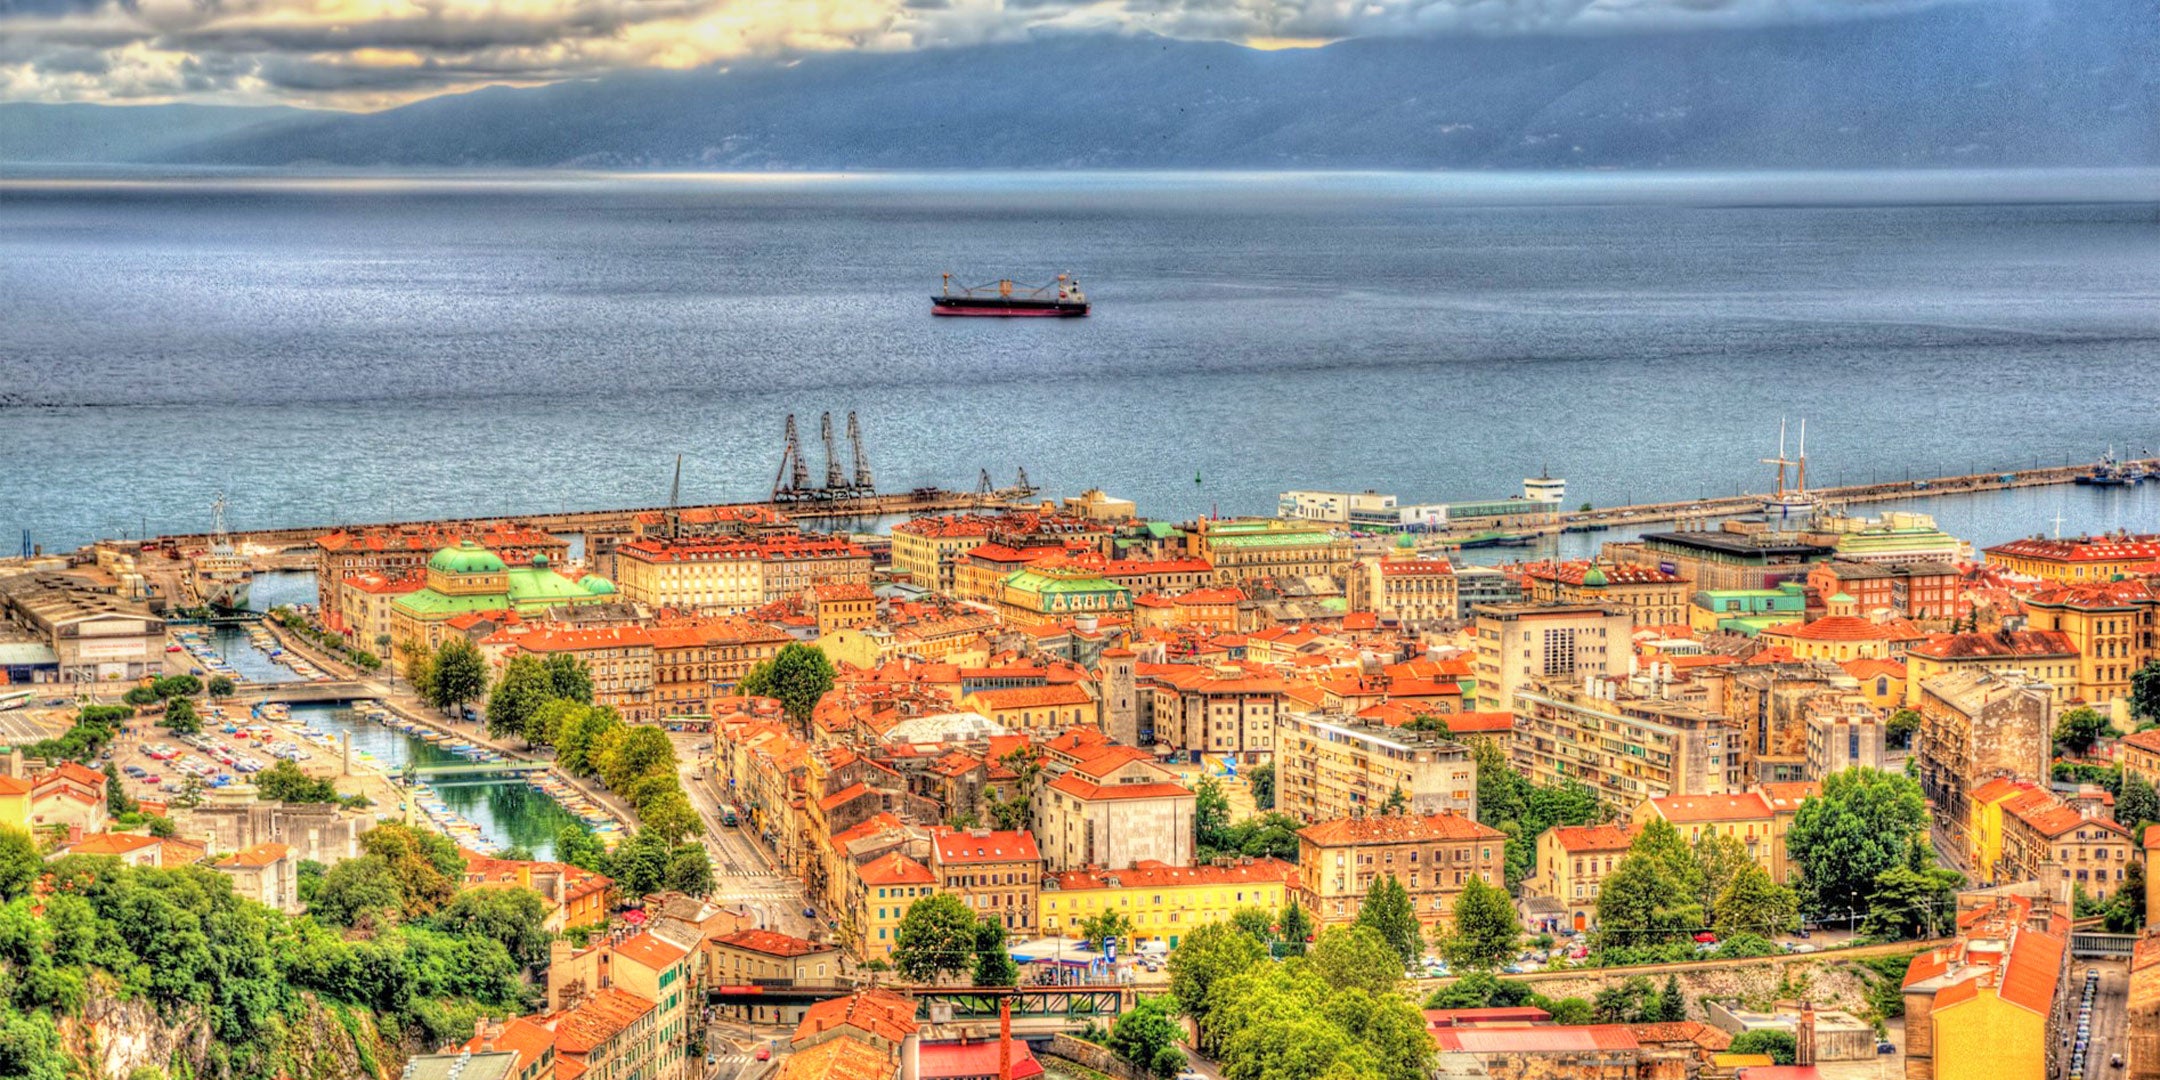 Rijeka ist das Bindeglied zwischen den Inseln und Städten der Kvarner Bucht.